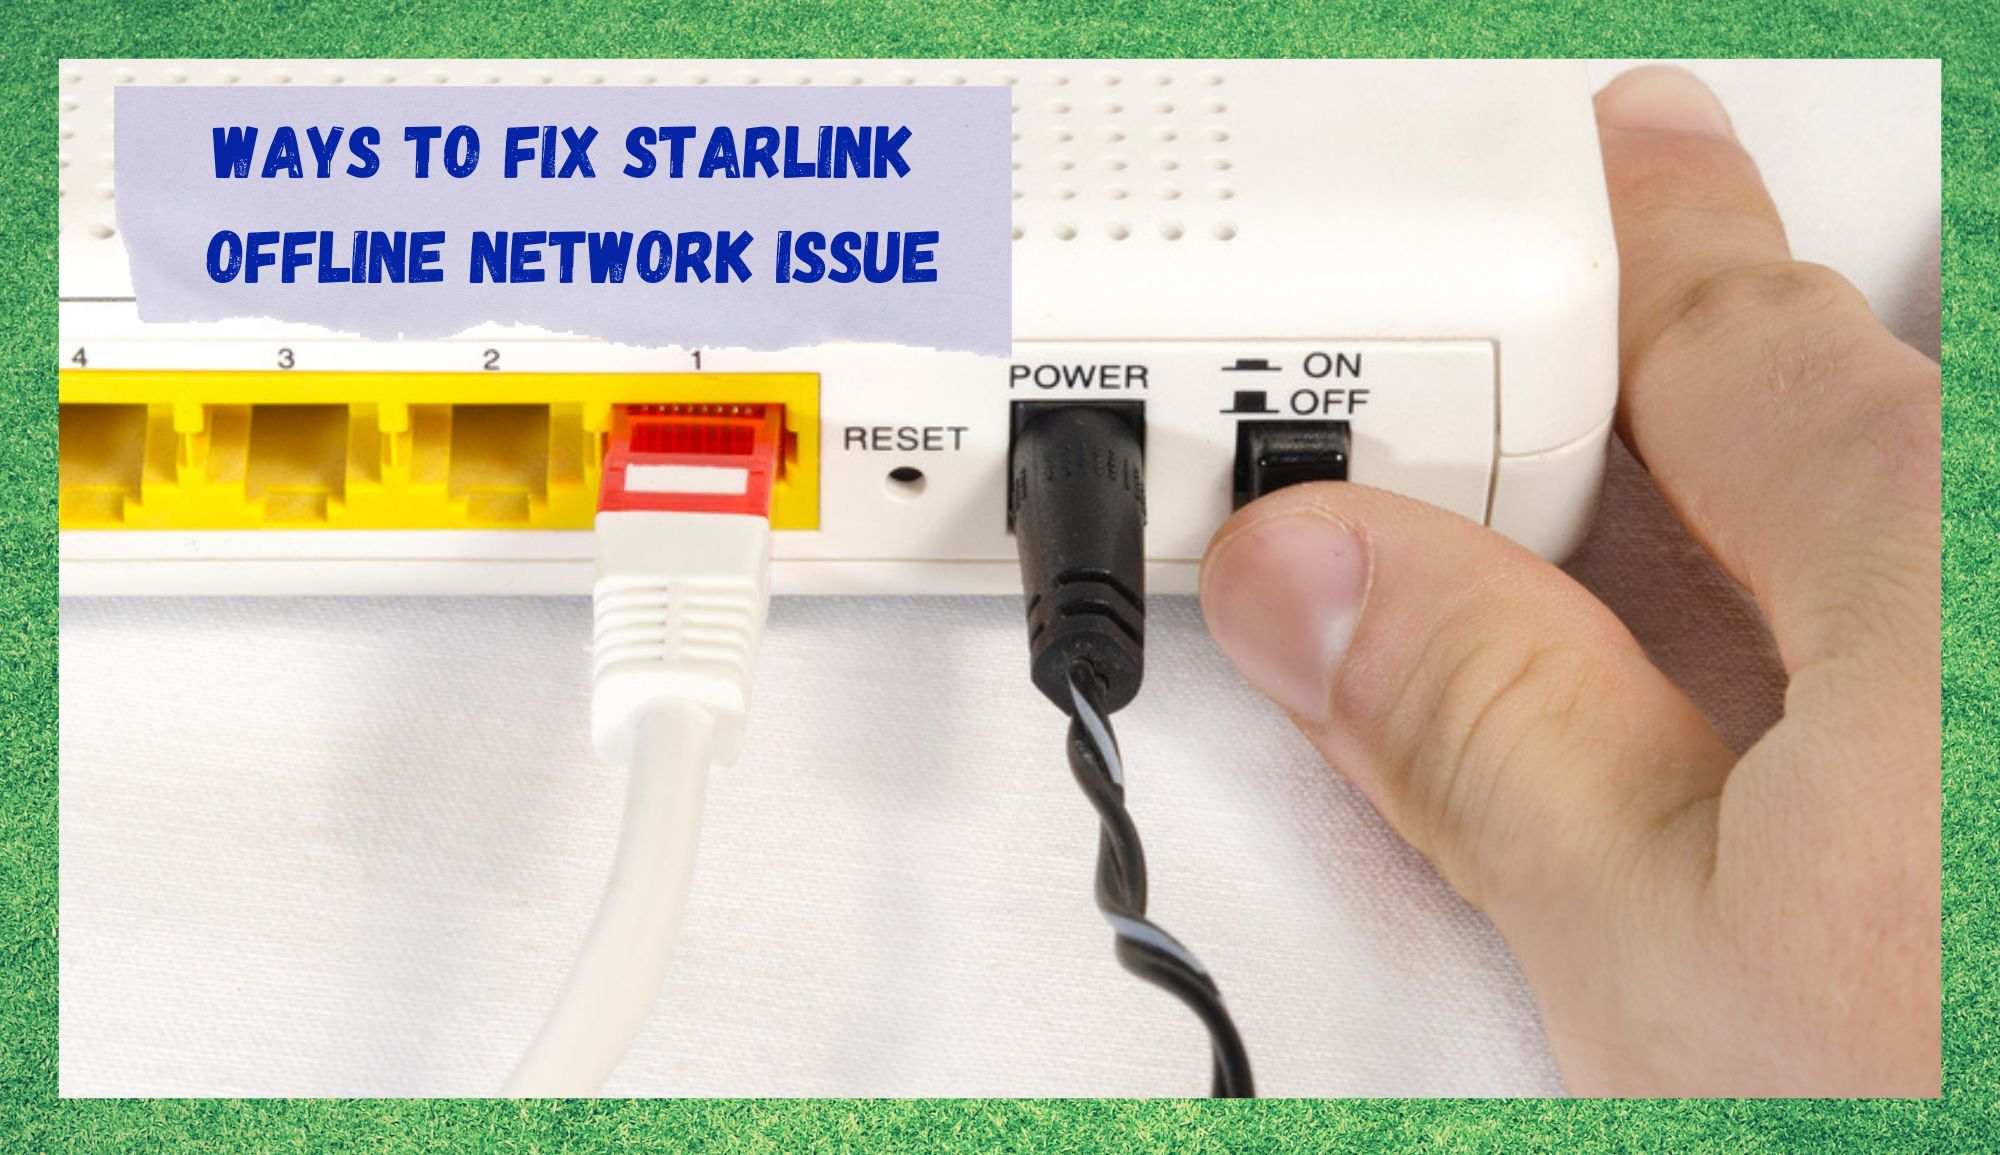 starlink offline network issue